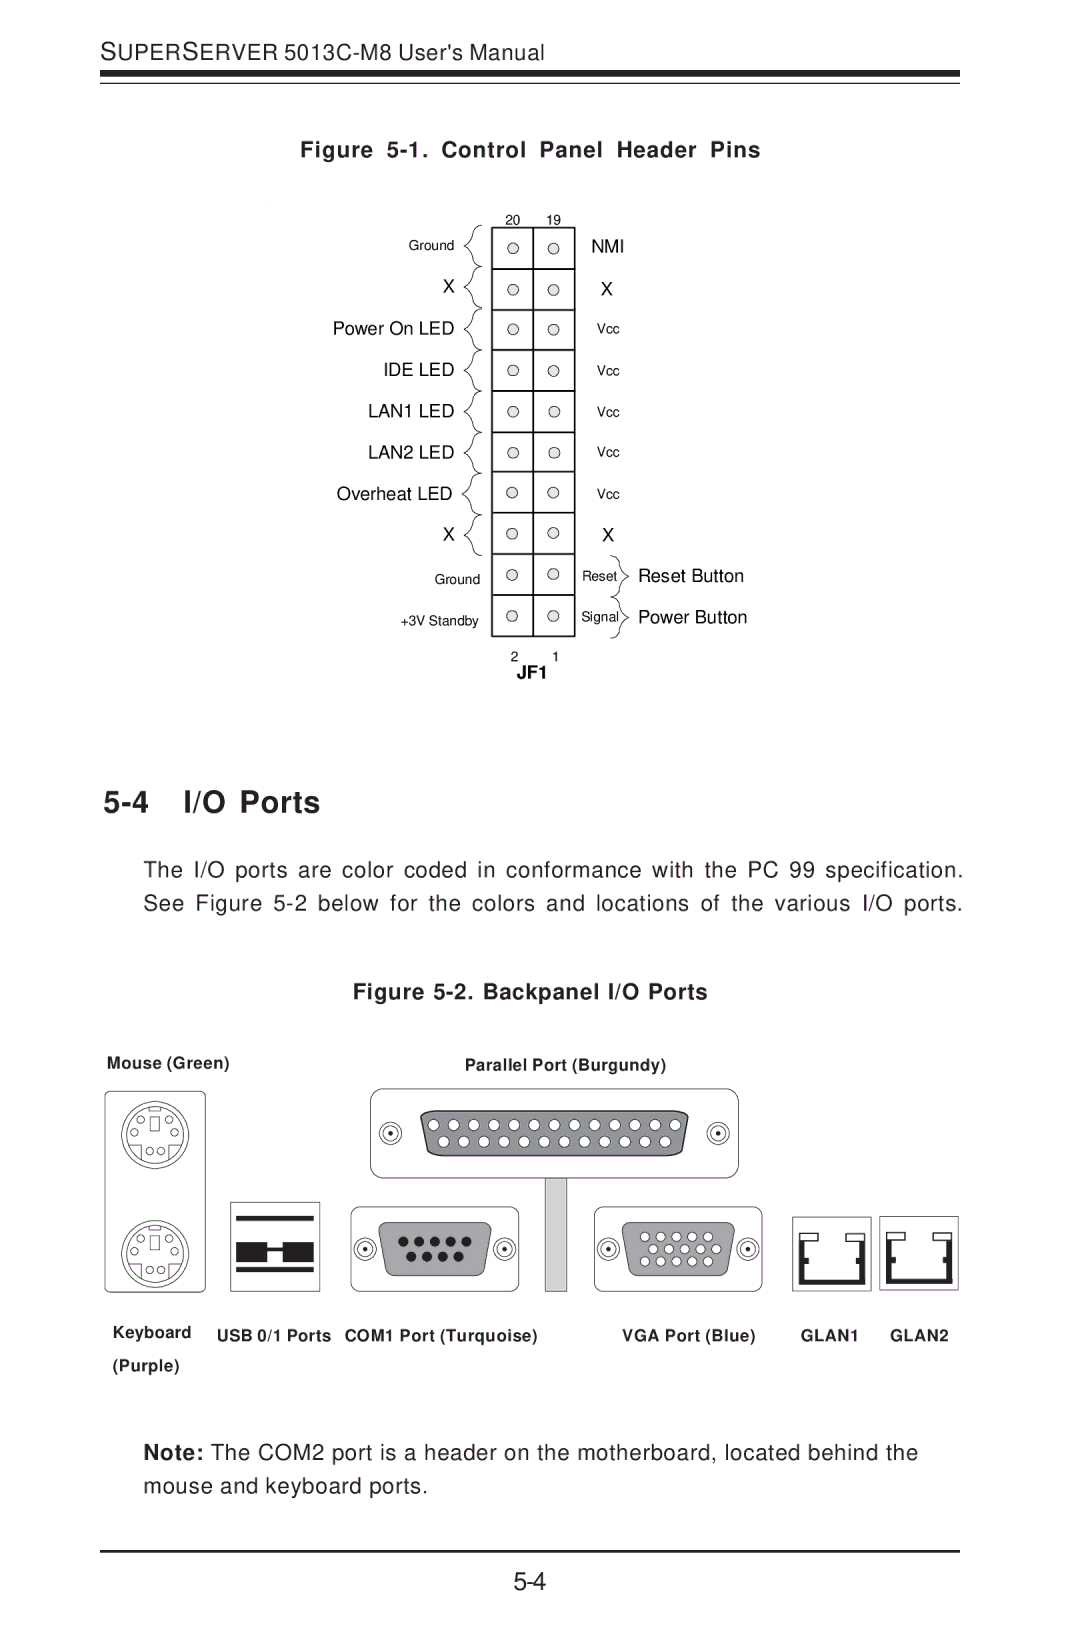 SUPER MICRO Computer 5013C-M8 user manual I/O Ports, Control Panel Header Pins 